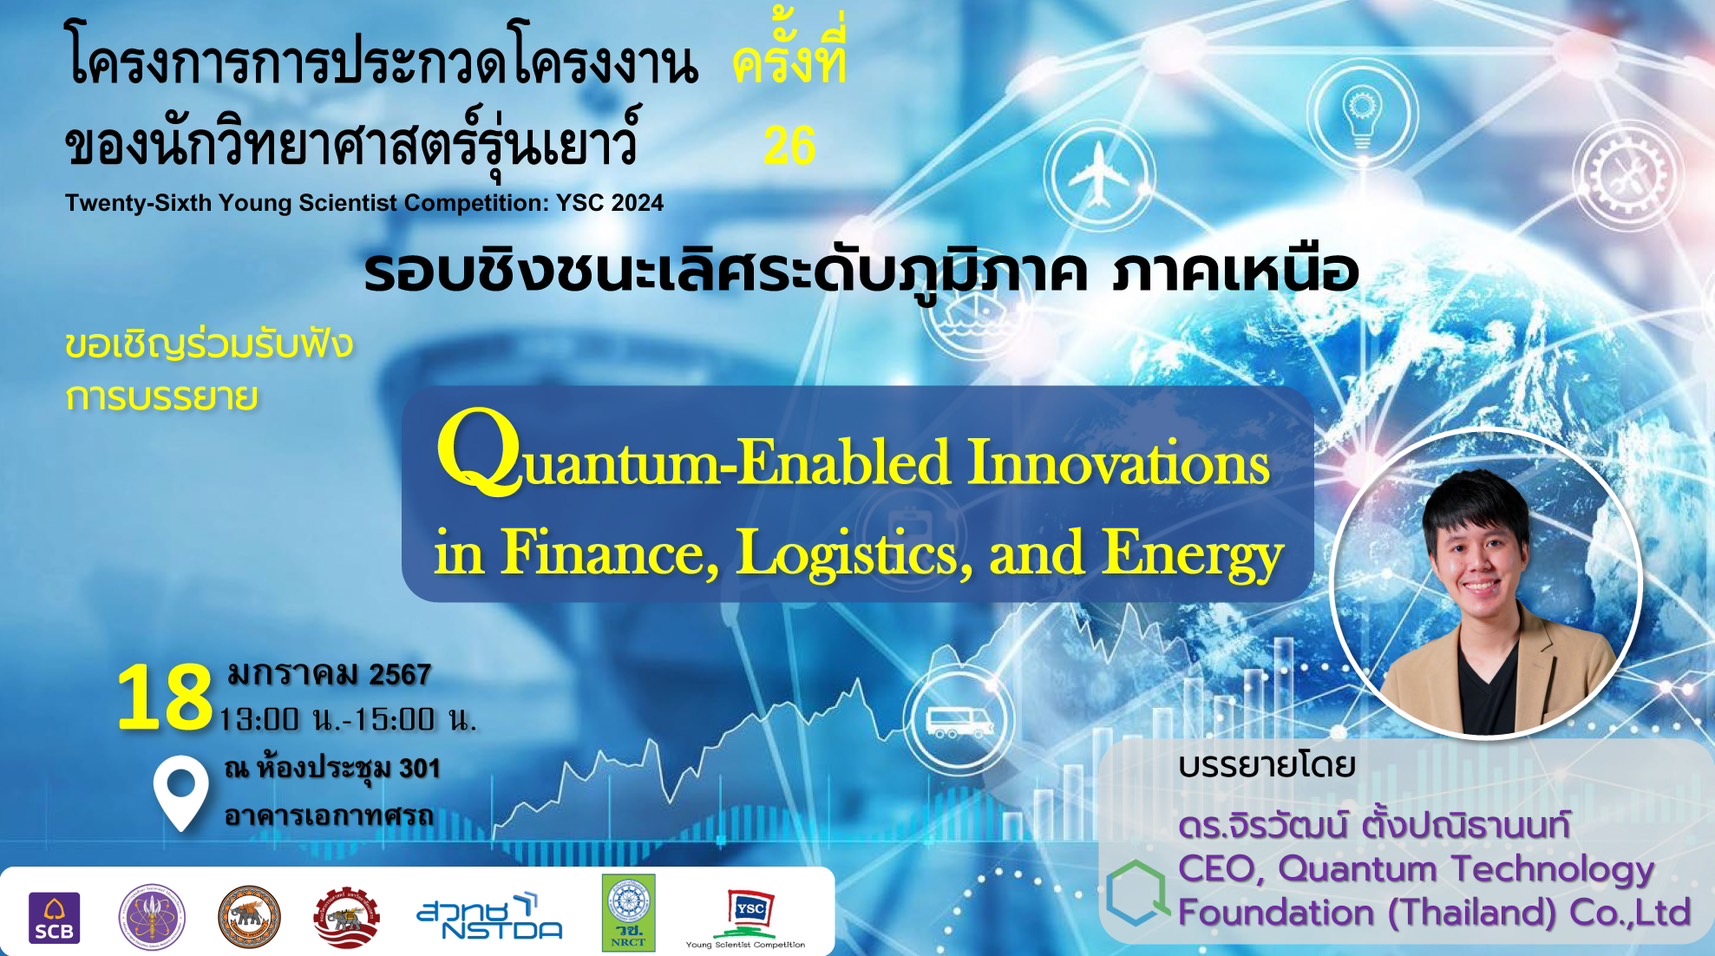 คณะวิศวกรรมศาสตร์ ขอเรียนเชิญคณาจารย์ นักวิจัย และนิสิตระดับบัณฑิตศึกษา ร่วมรับฟังการบรรยายพิเศษในหัวข้อ “Quantum-Enabled Innovations in Finance, Logistics, and Energy”  